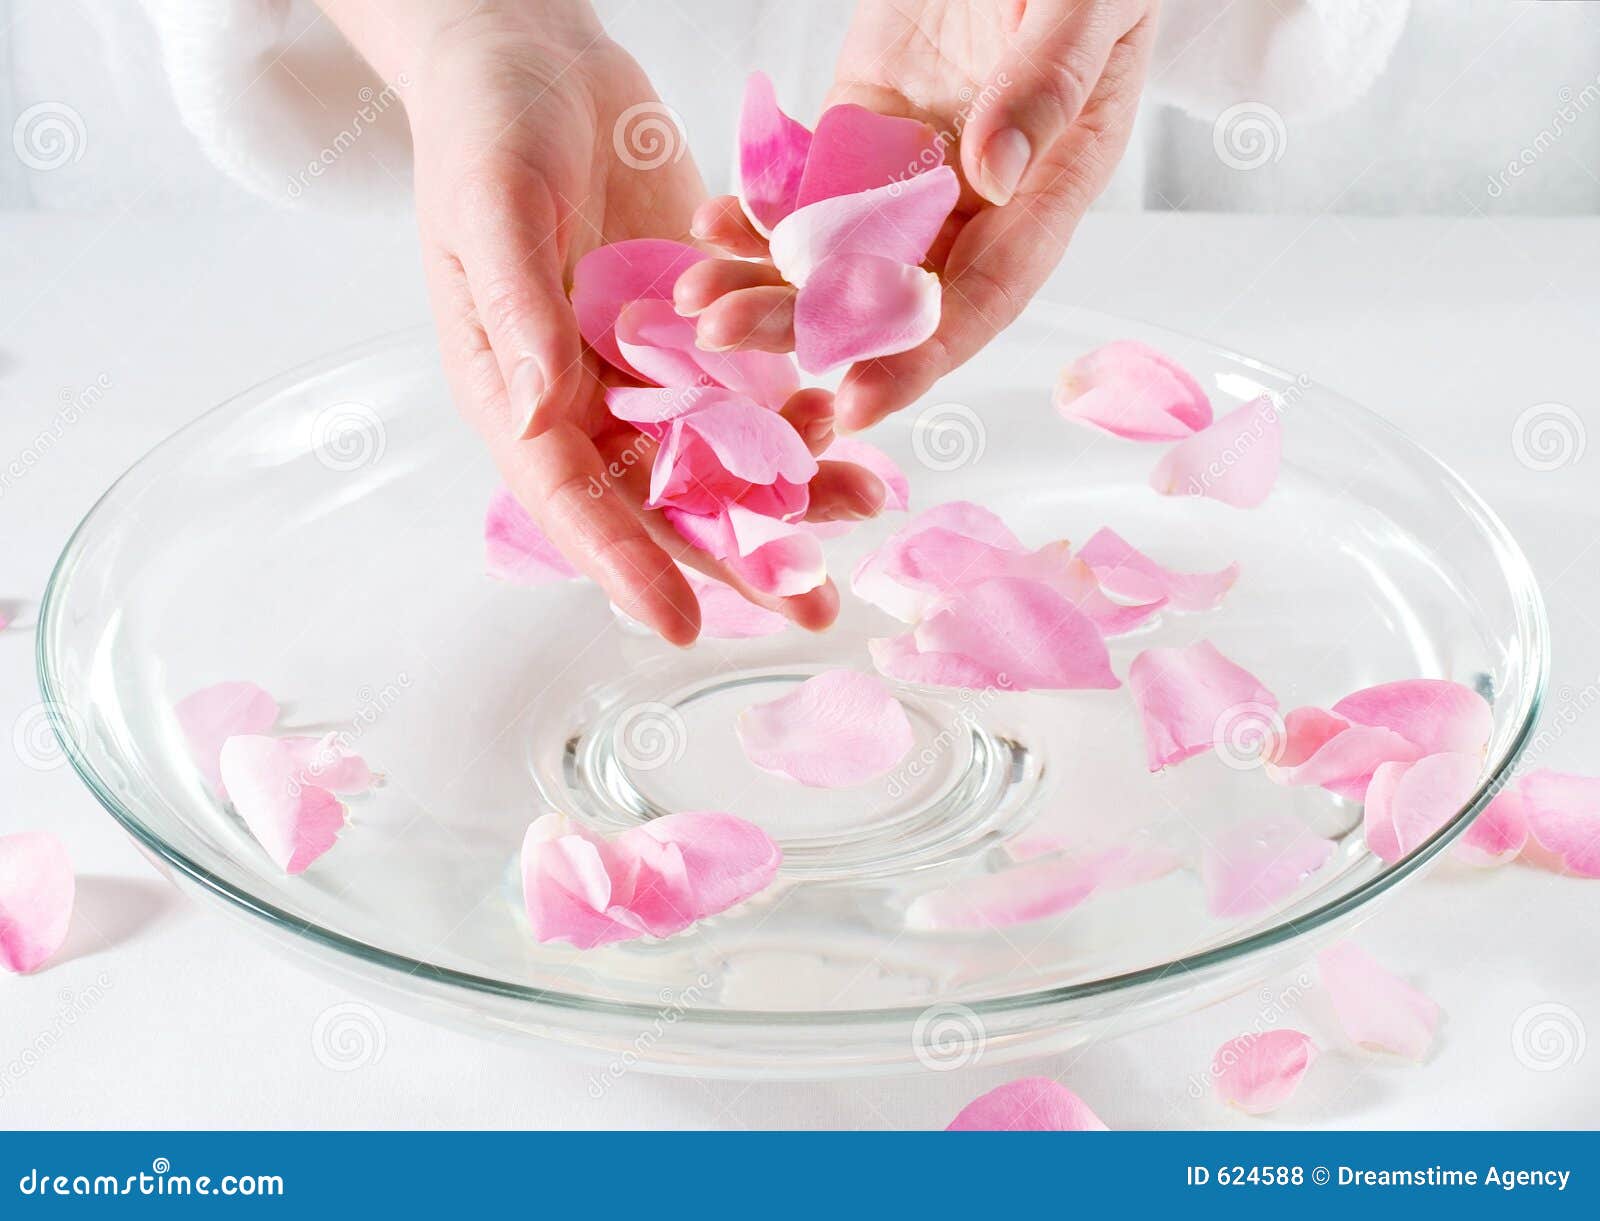 rose petal spa